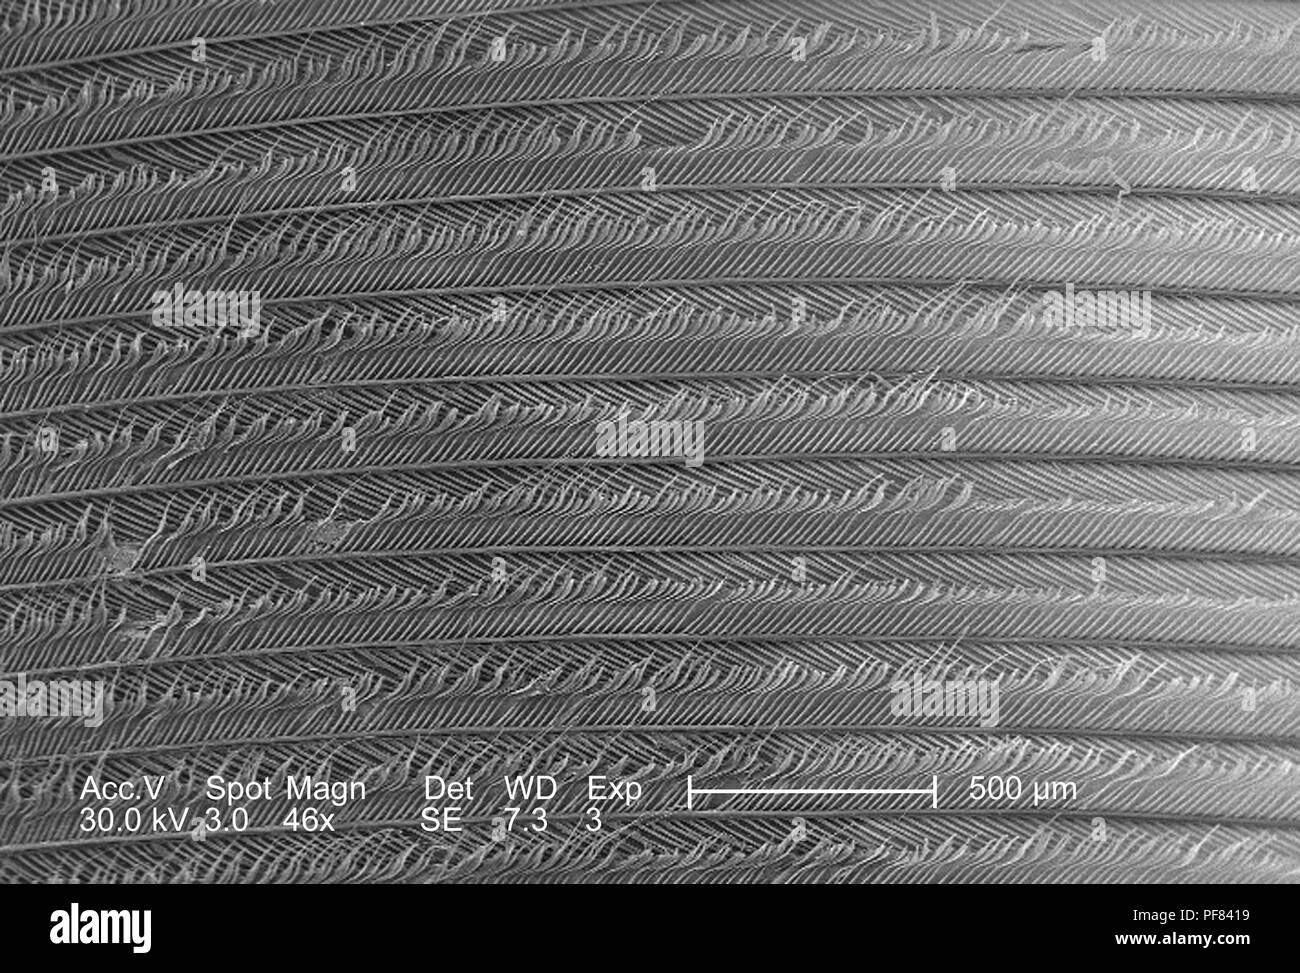 Fortemente ingrandita di piume raffigurato in 46x di scansione ingrandita al microscopio elettronico (SEM) immagine, 2006. Immagine cortesia di centri per il controllo delle malattie (CDC) / Janice Haney Carr. () Foto Stock